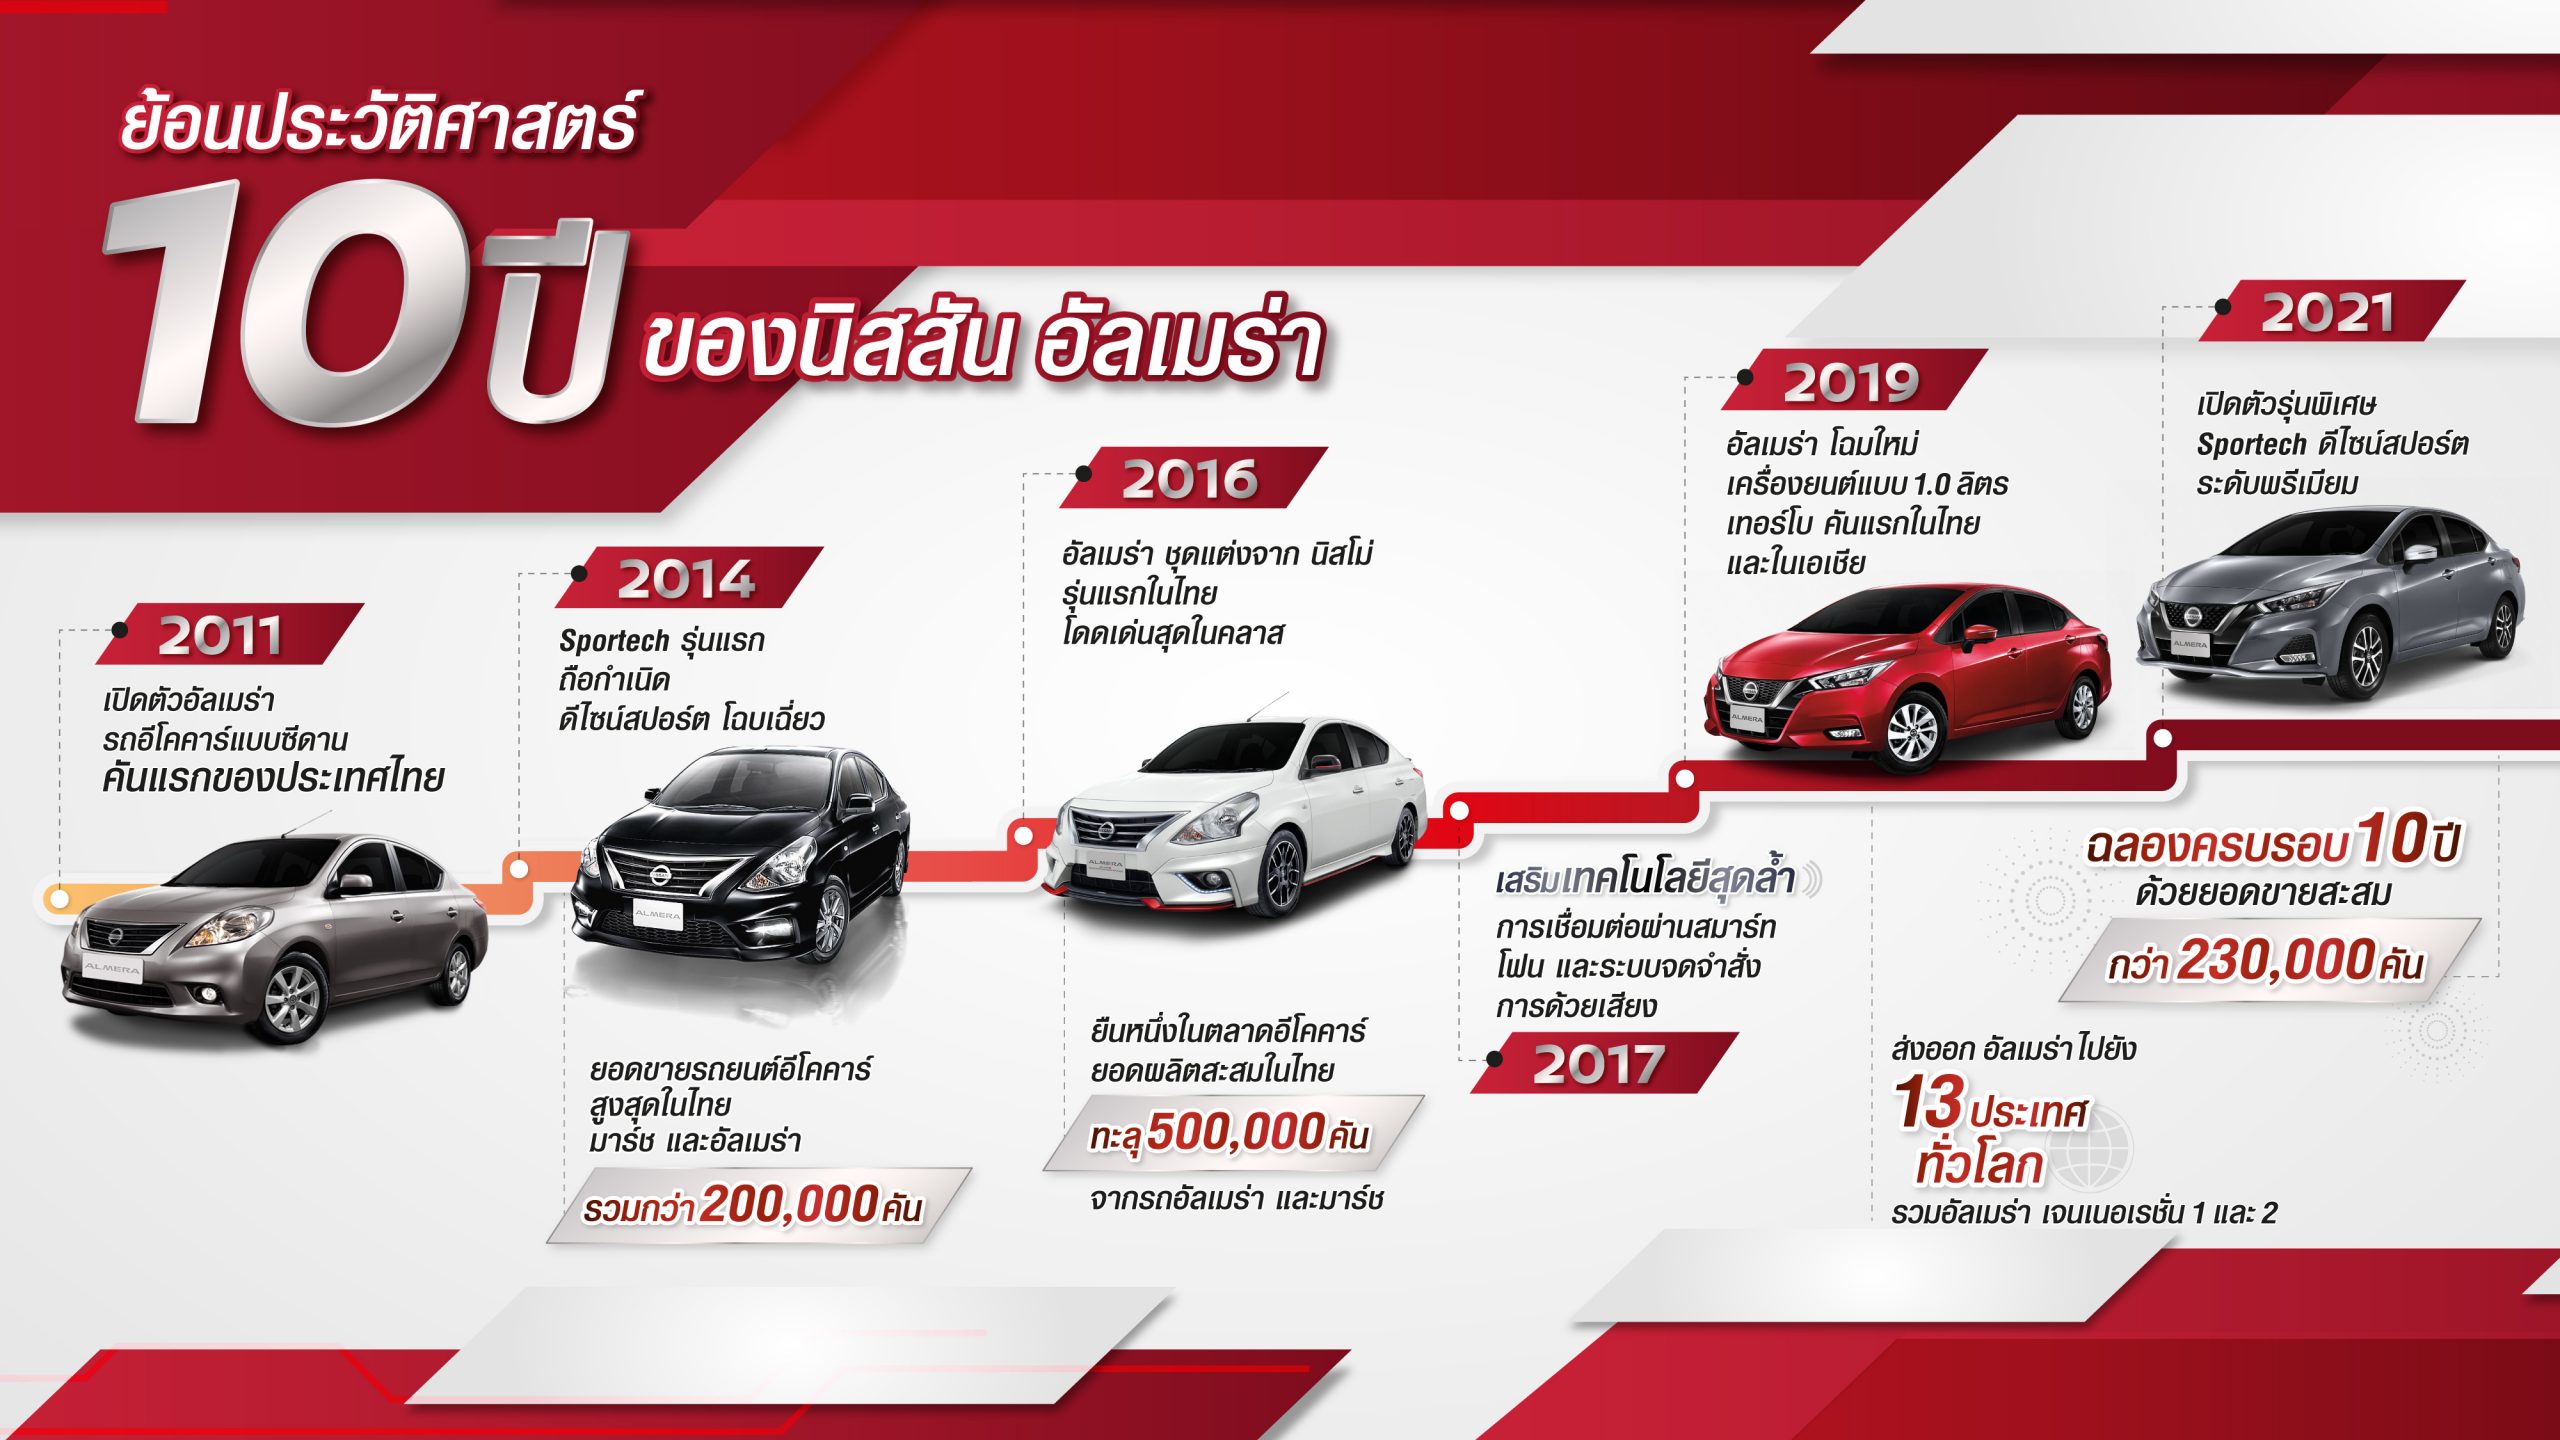 2021 Nissan Almera Thailand